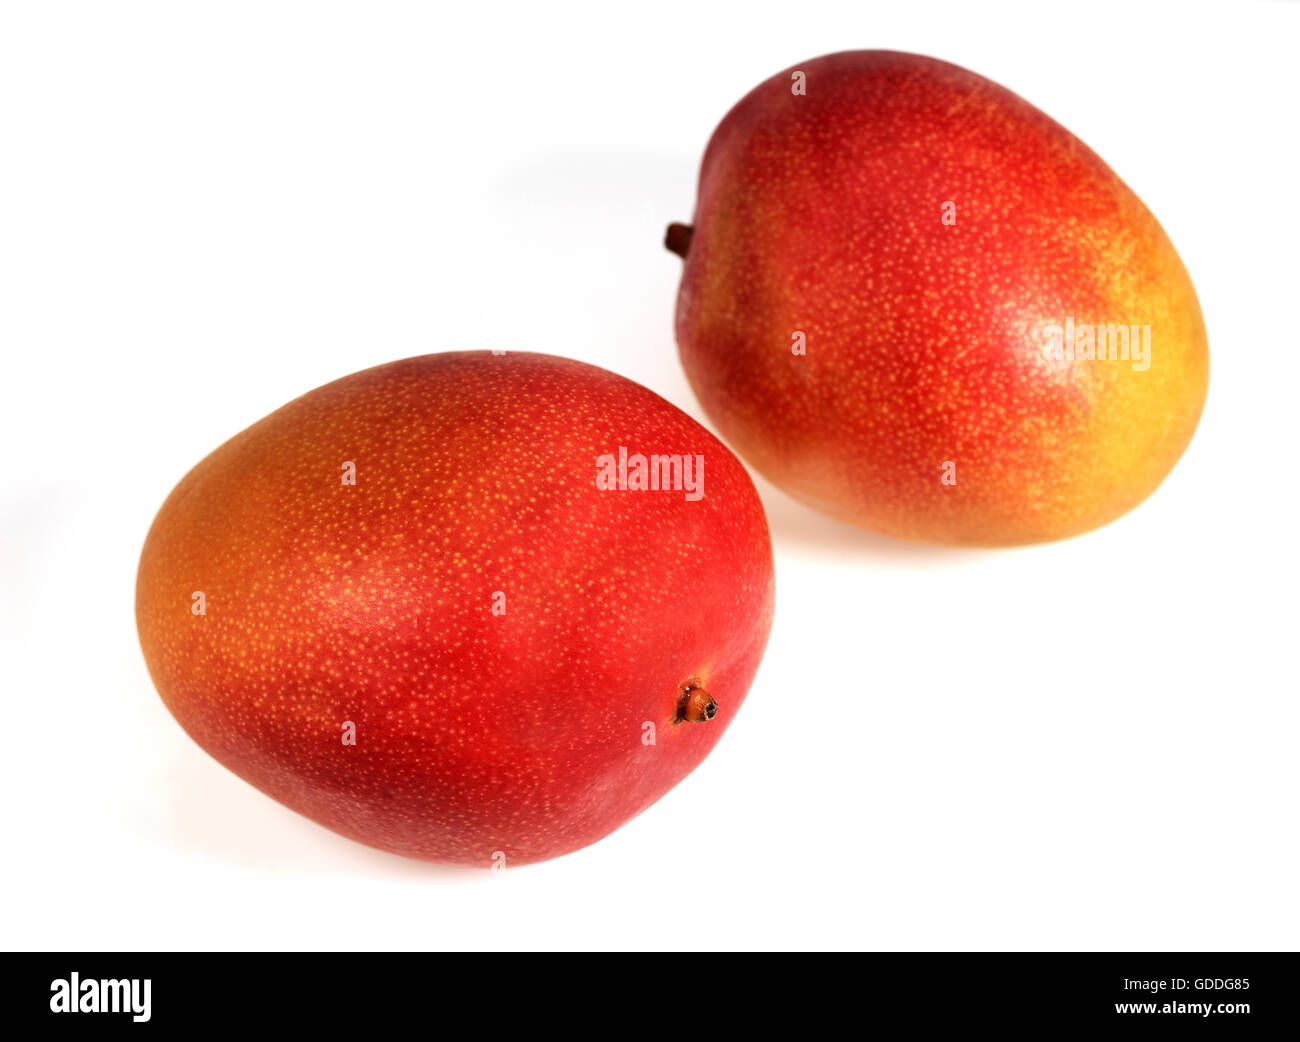 Mango, mangifera indica, Fruits against White Background Stock Photo